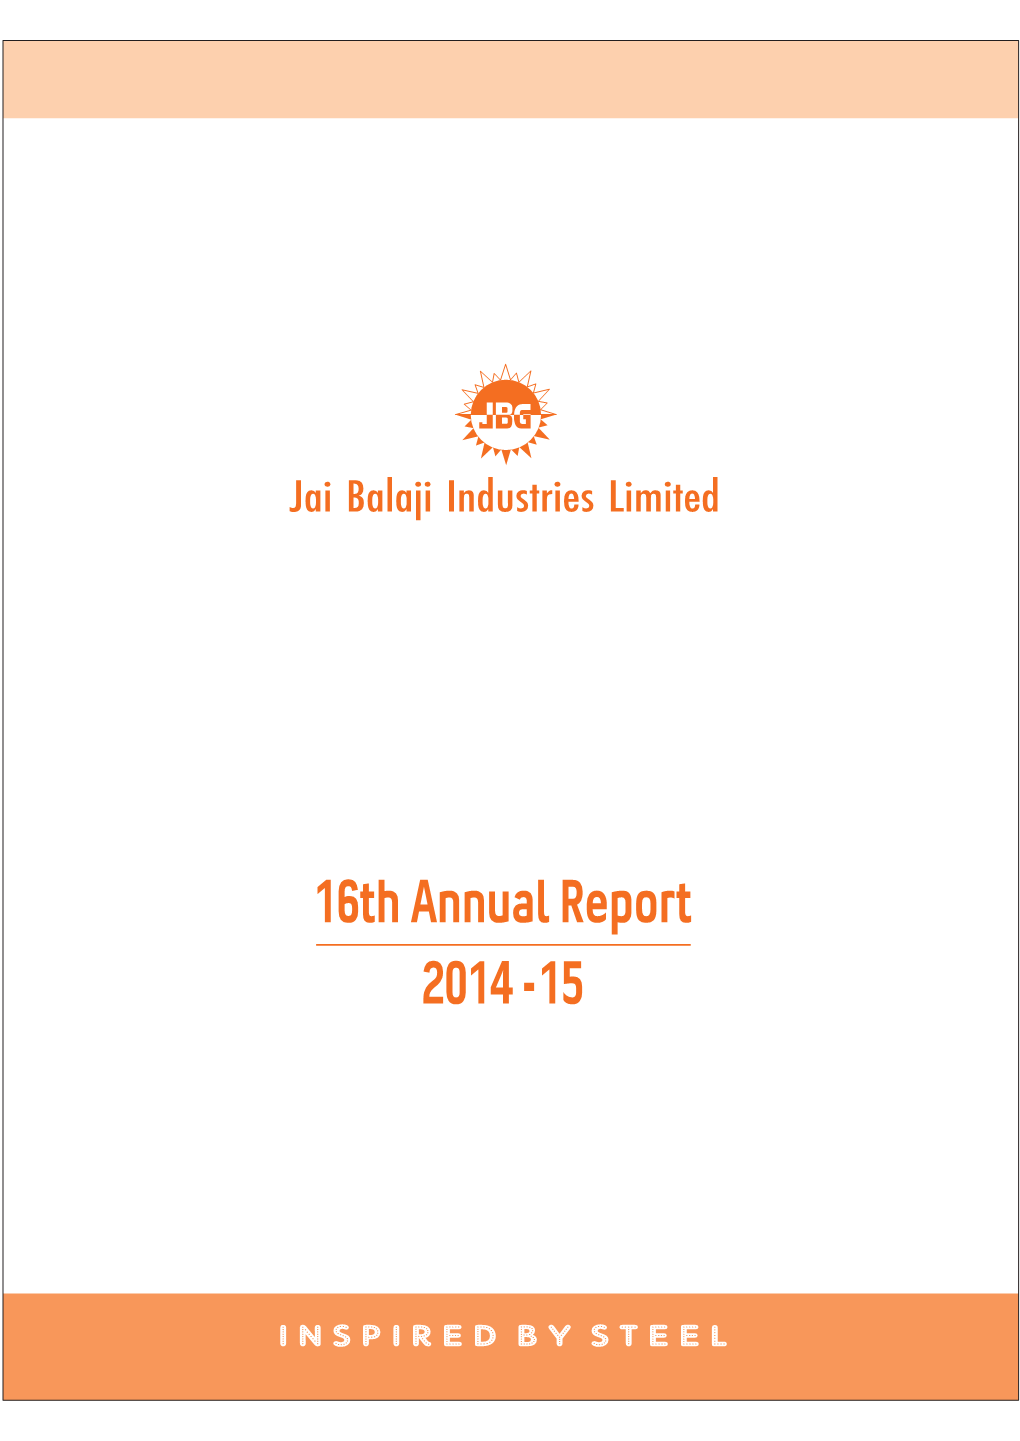 Jai Balaji Industries Limited Annual Report 2014-15